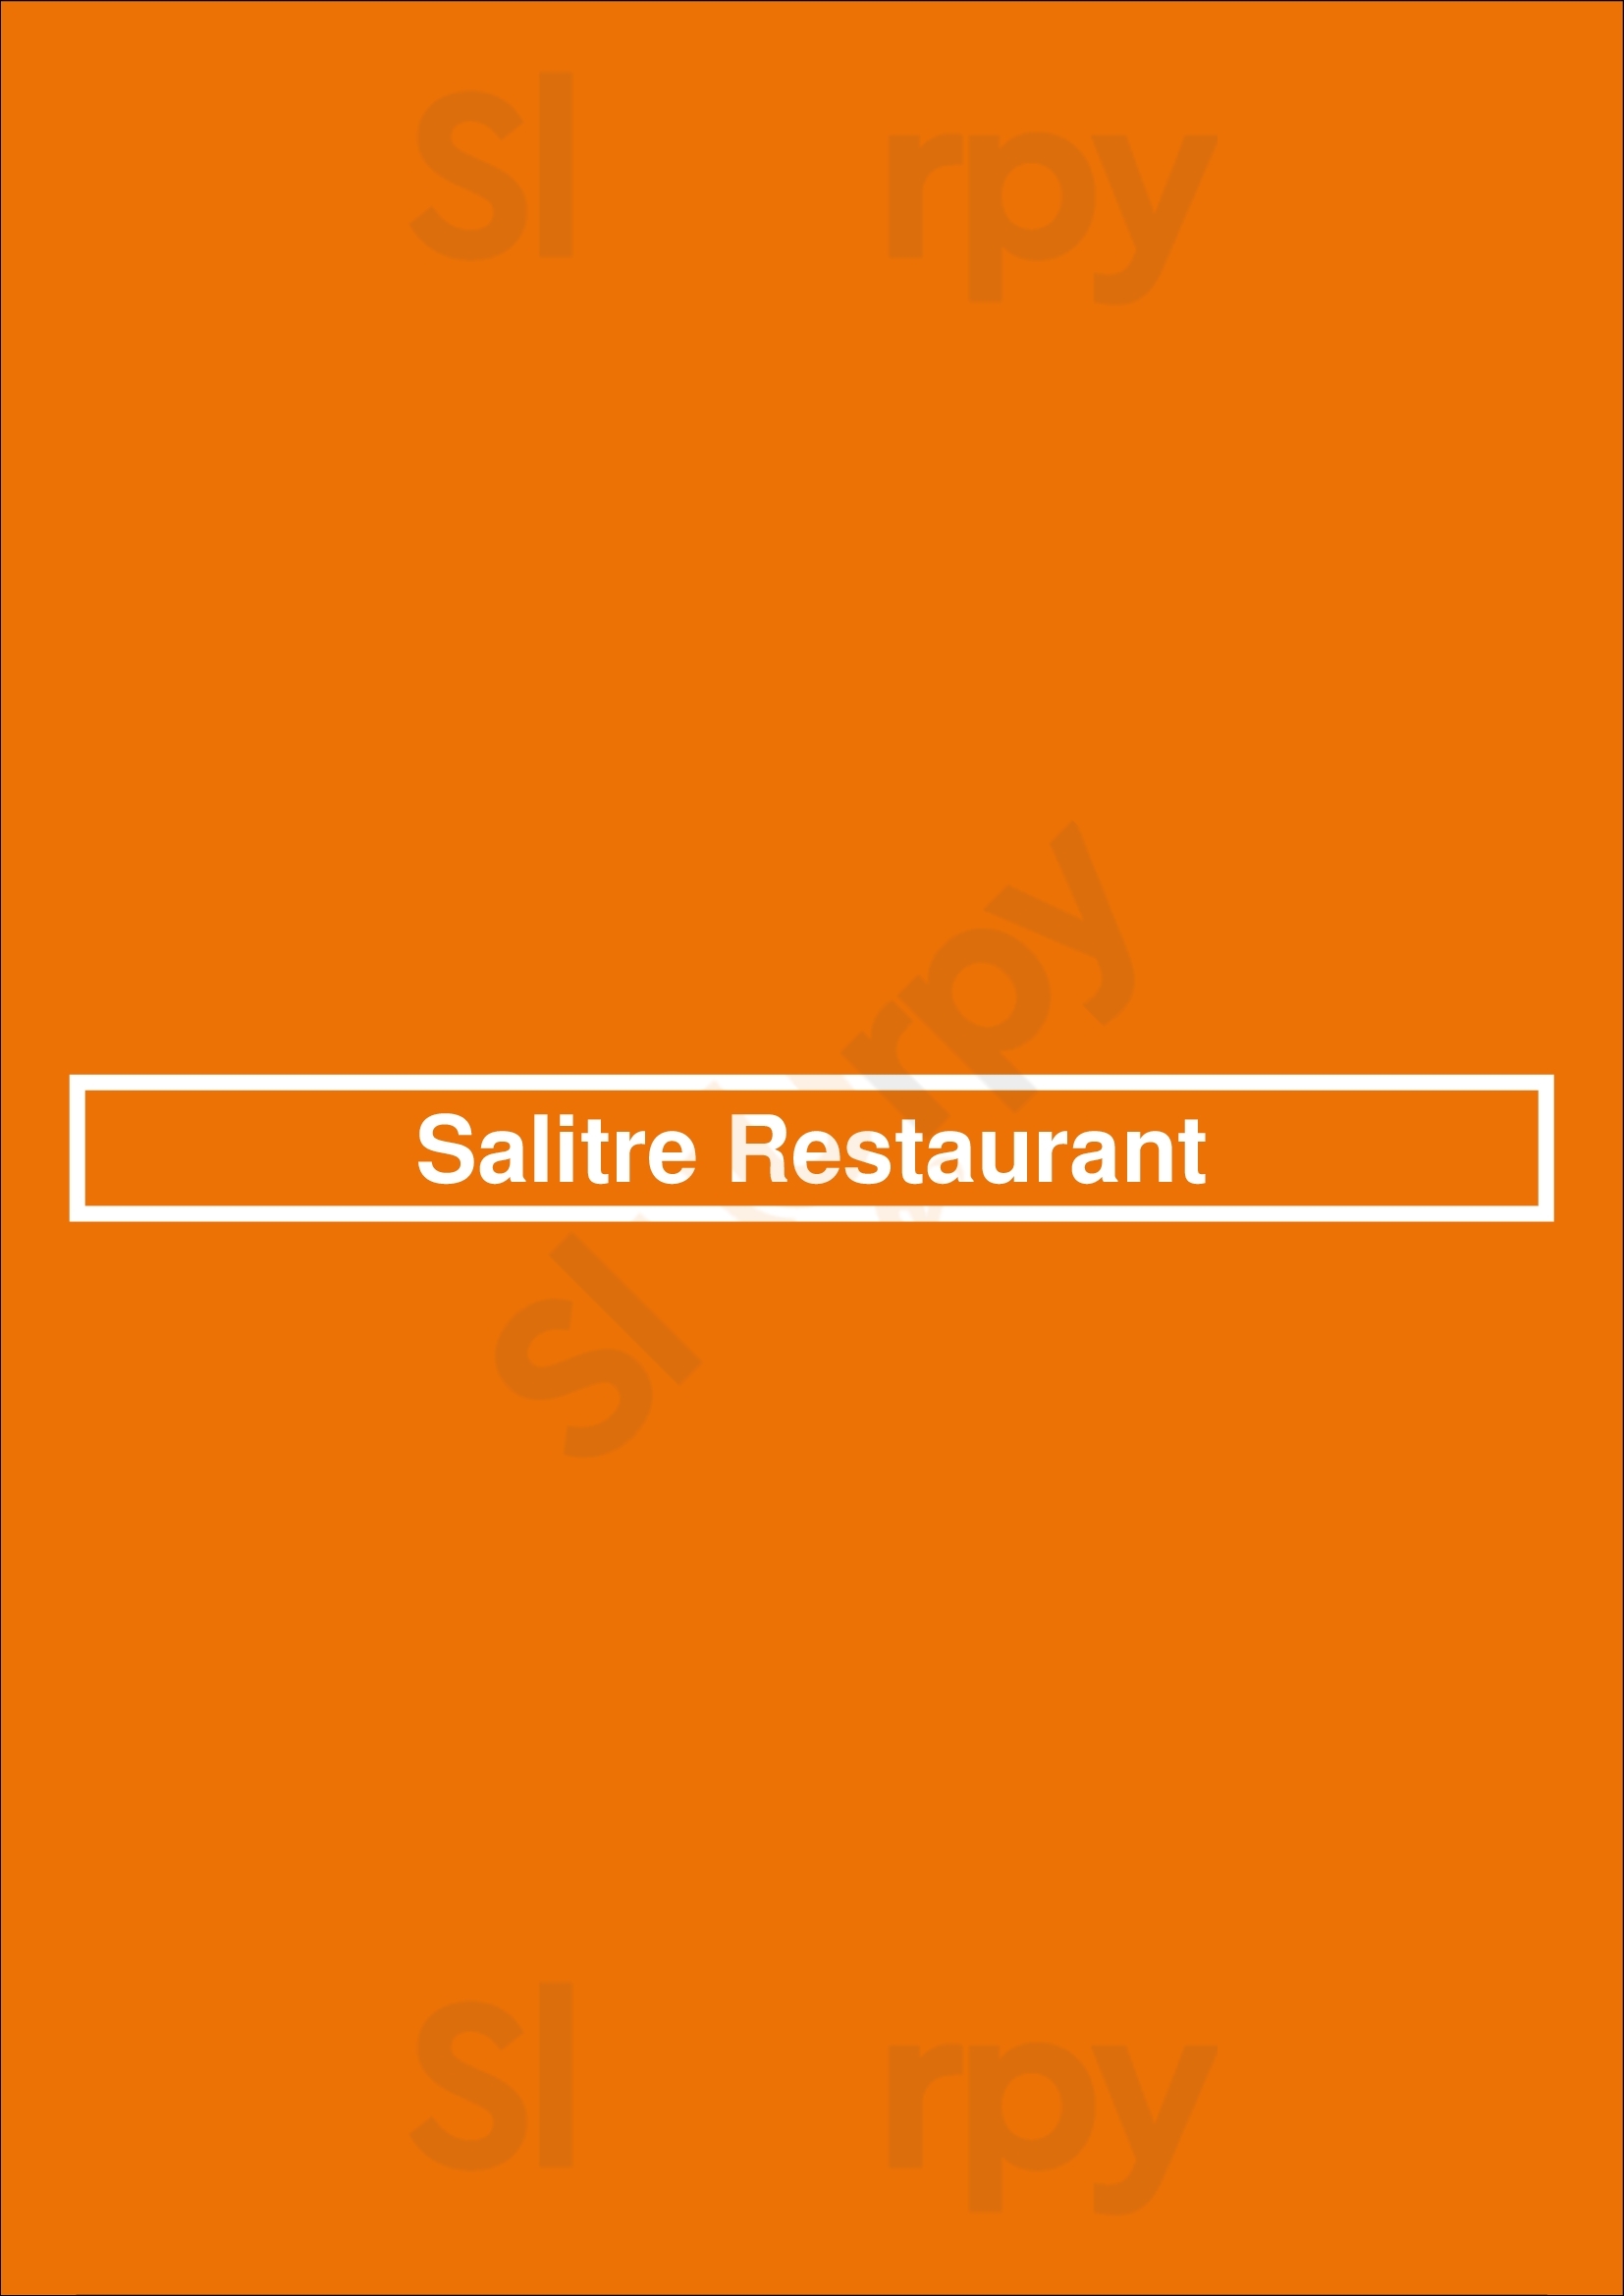 Salitre Restaurant Lisboa Menu - 1